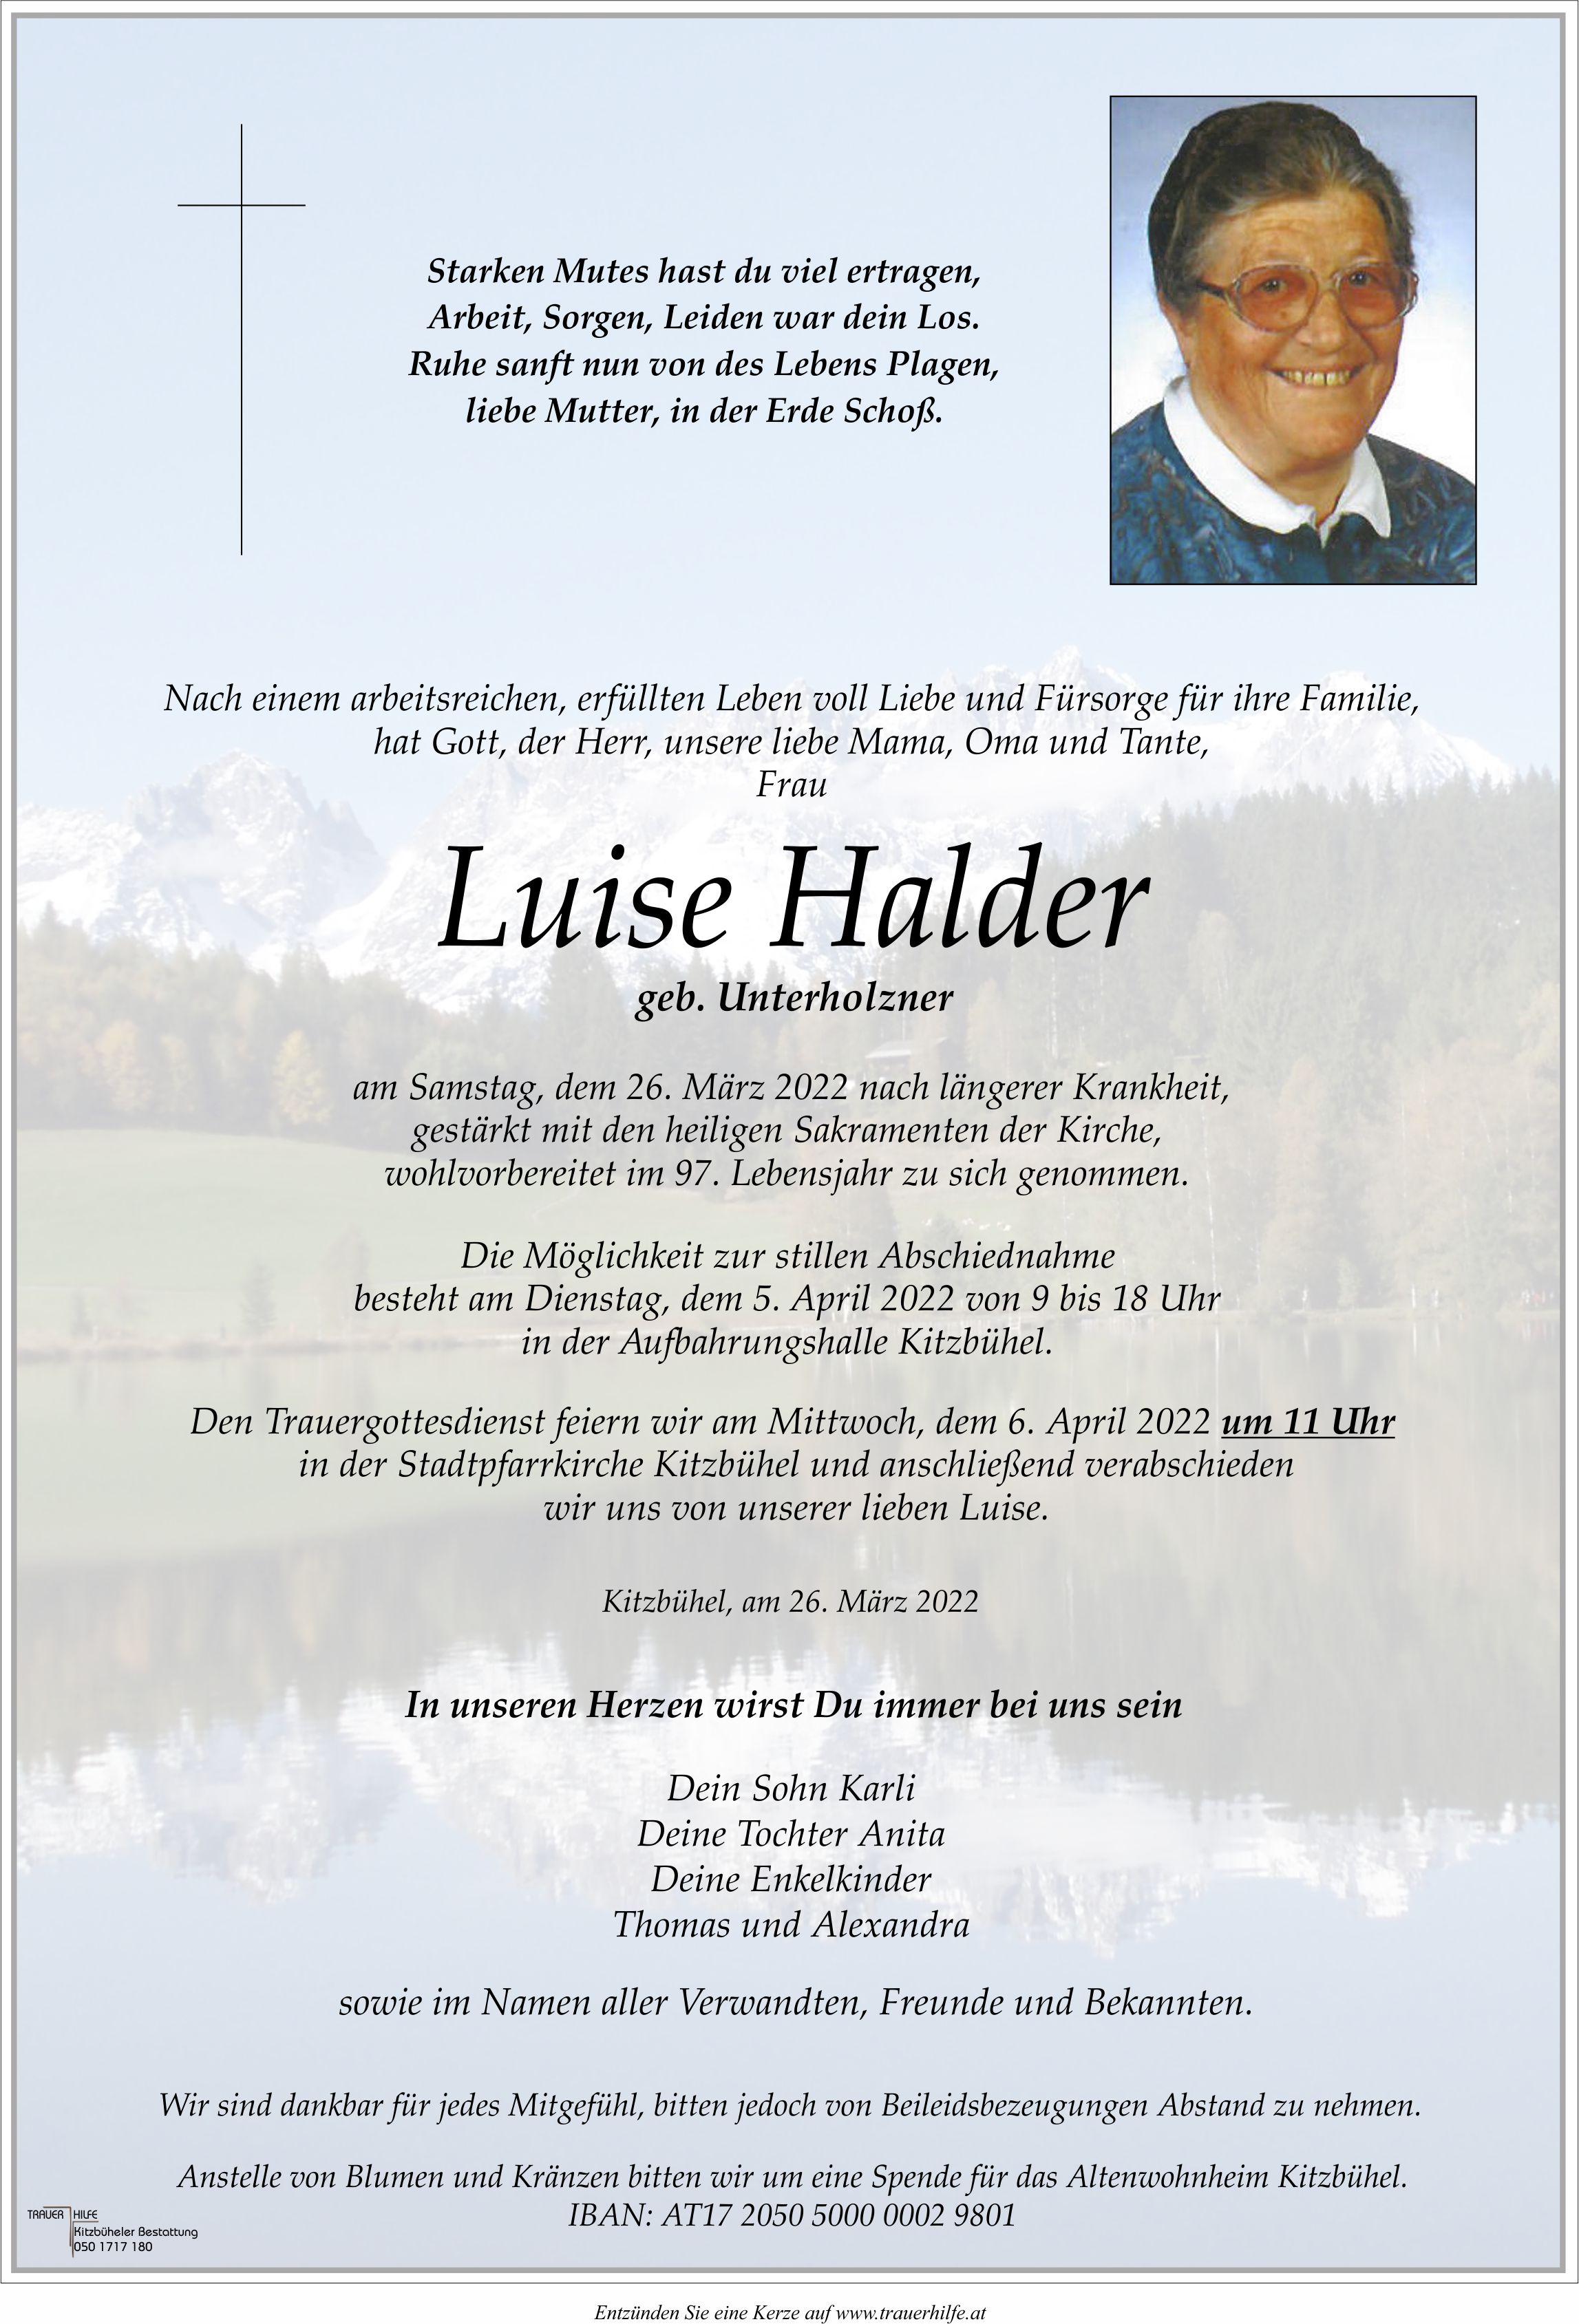 Luise Halder